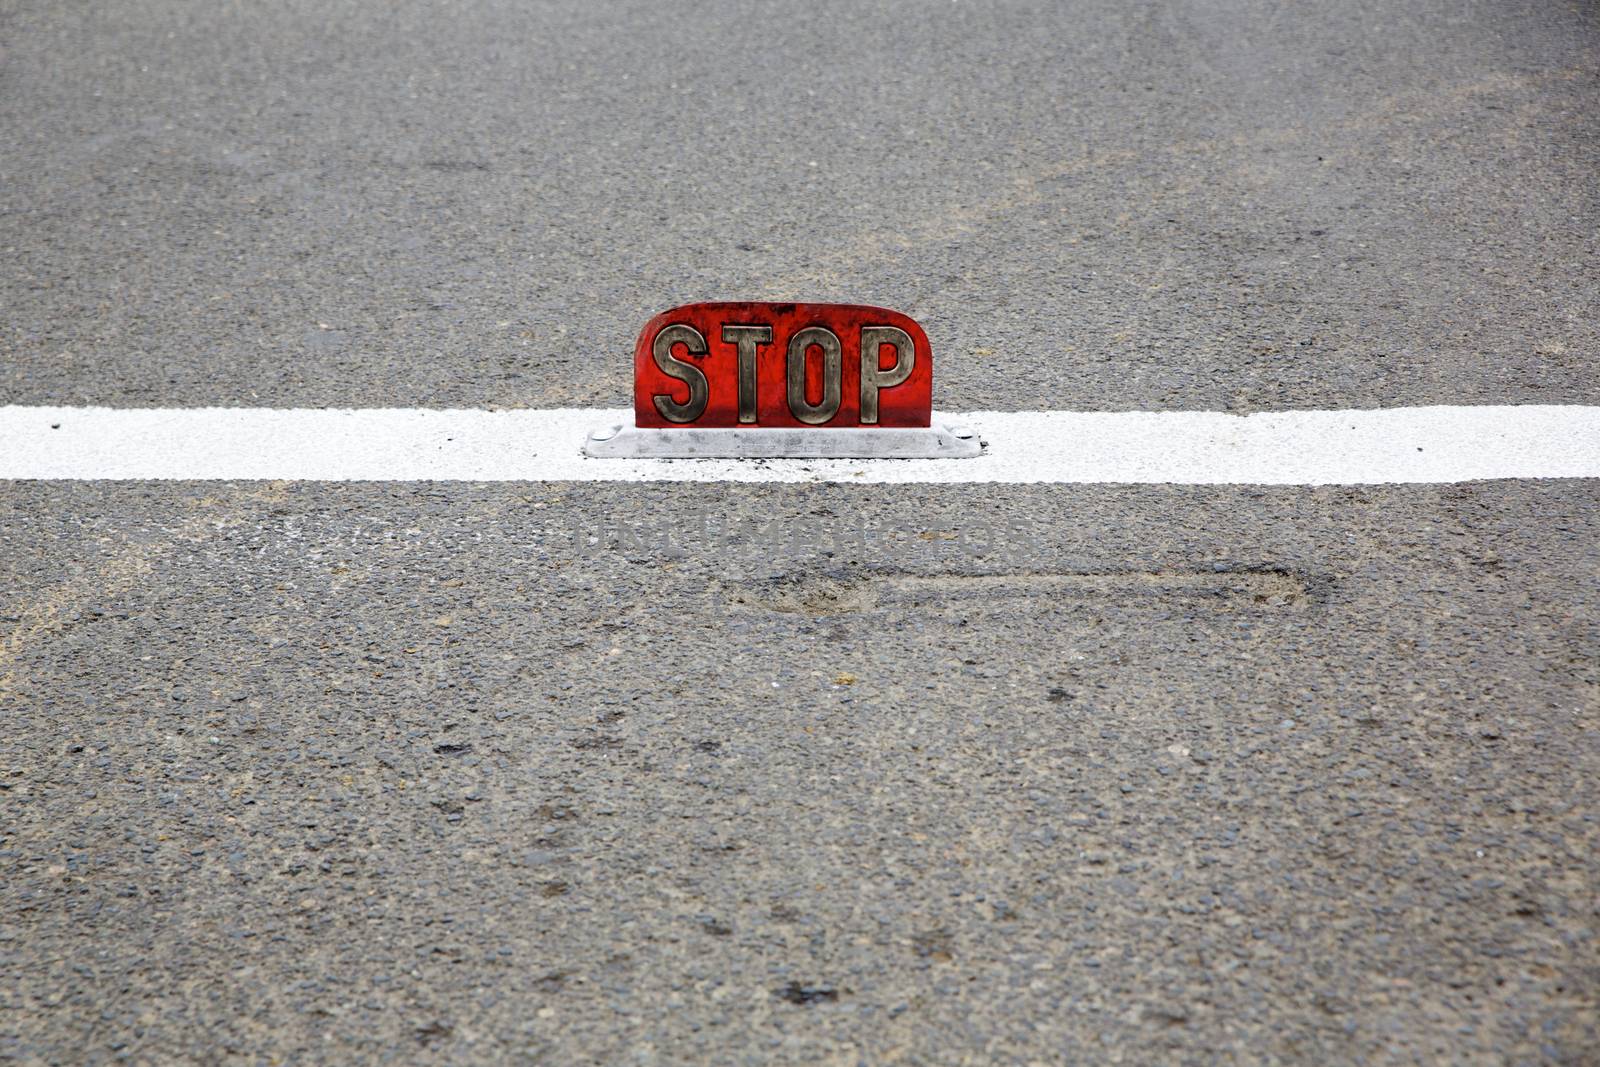 Old road stop sign mounted on asphalt